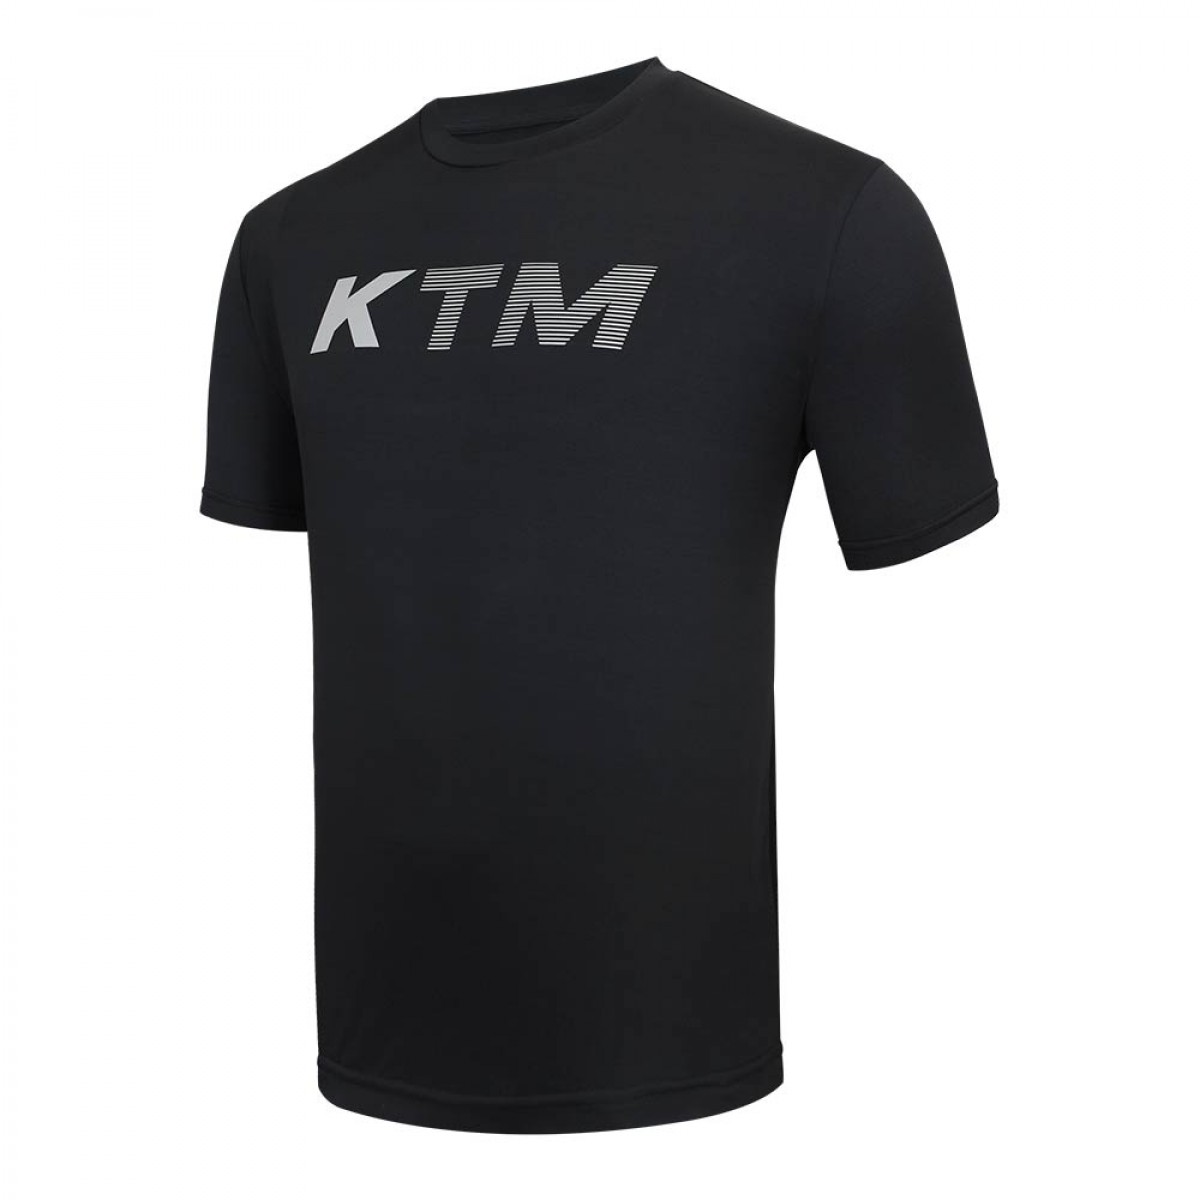 ktm-cty-round-neck-r-shirt-krnt25213-8a